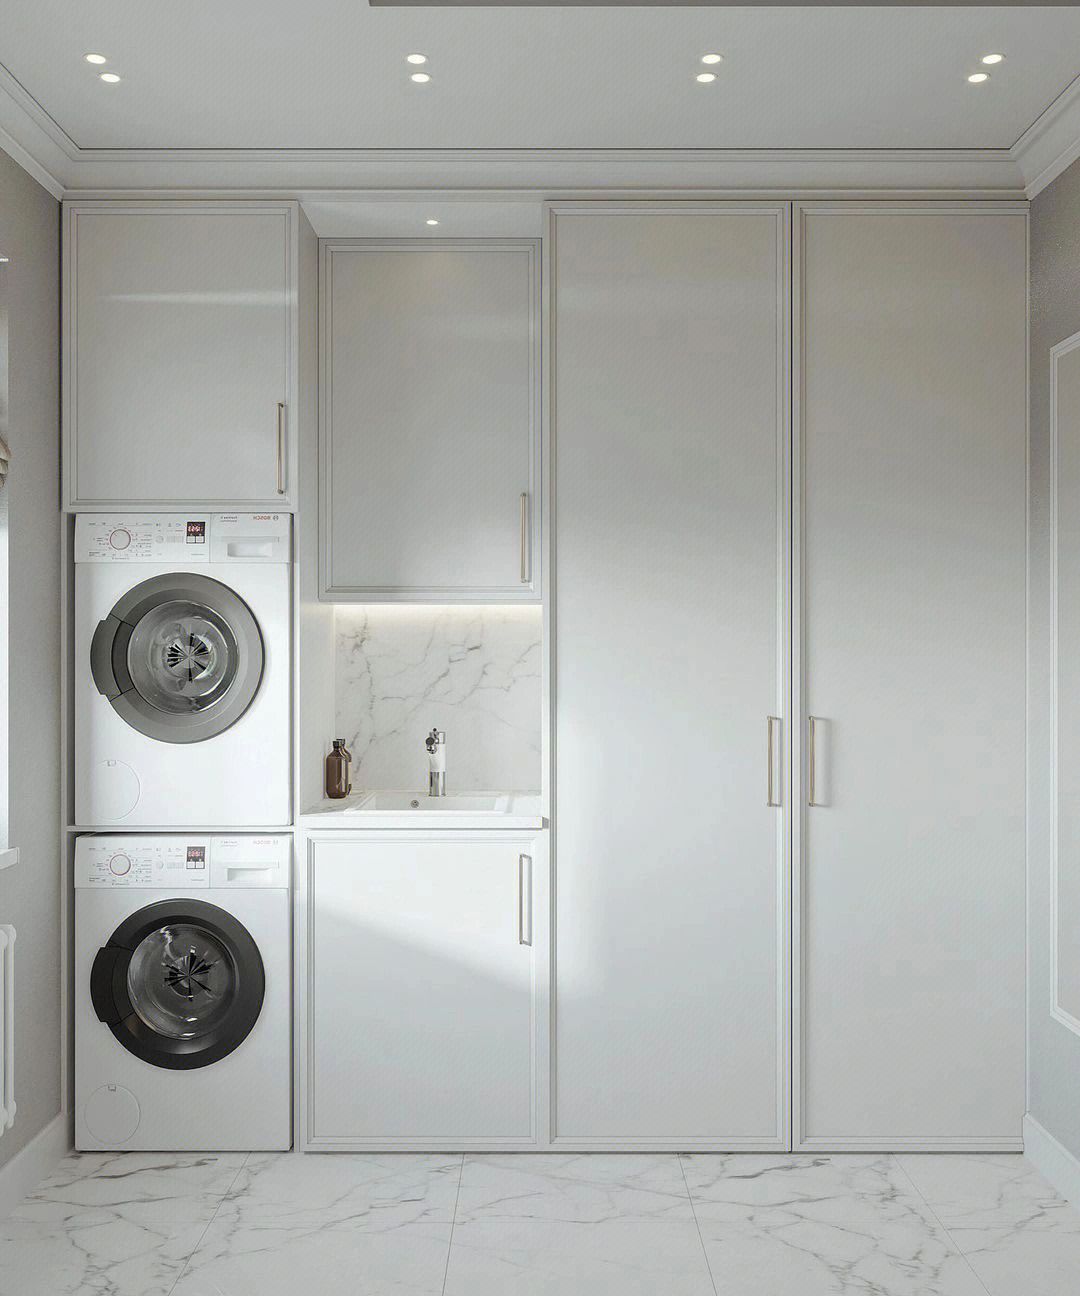 如果有足够的空间在通风的地方单独设置一个洗衣房最好94二:电器的